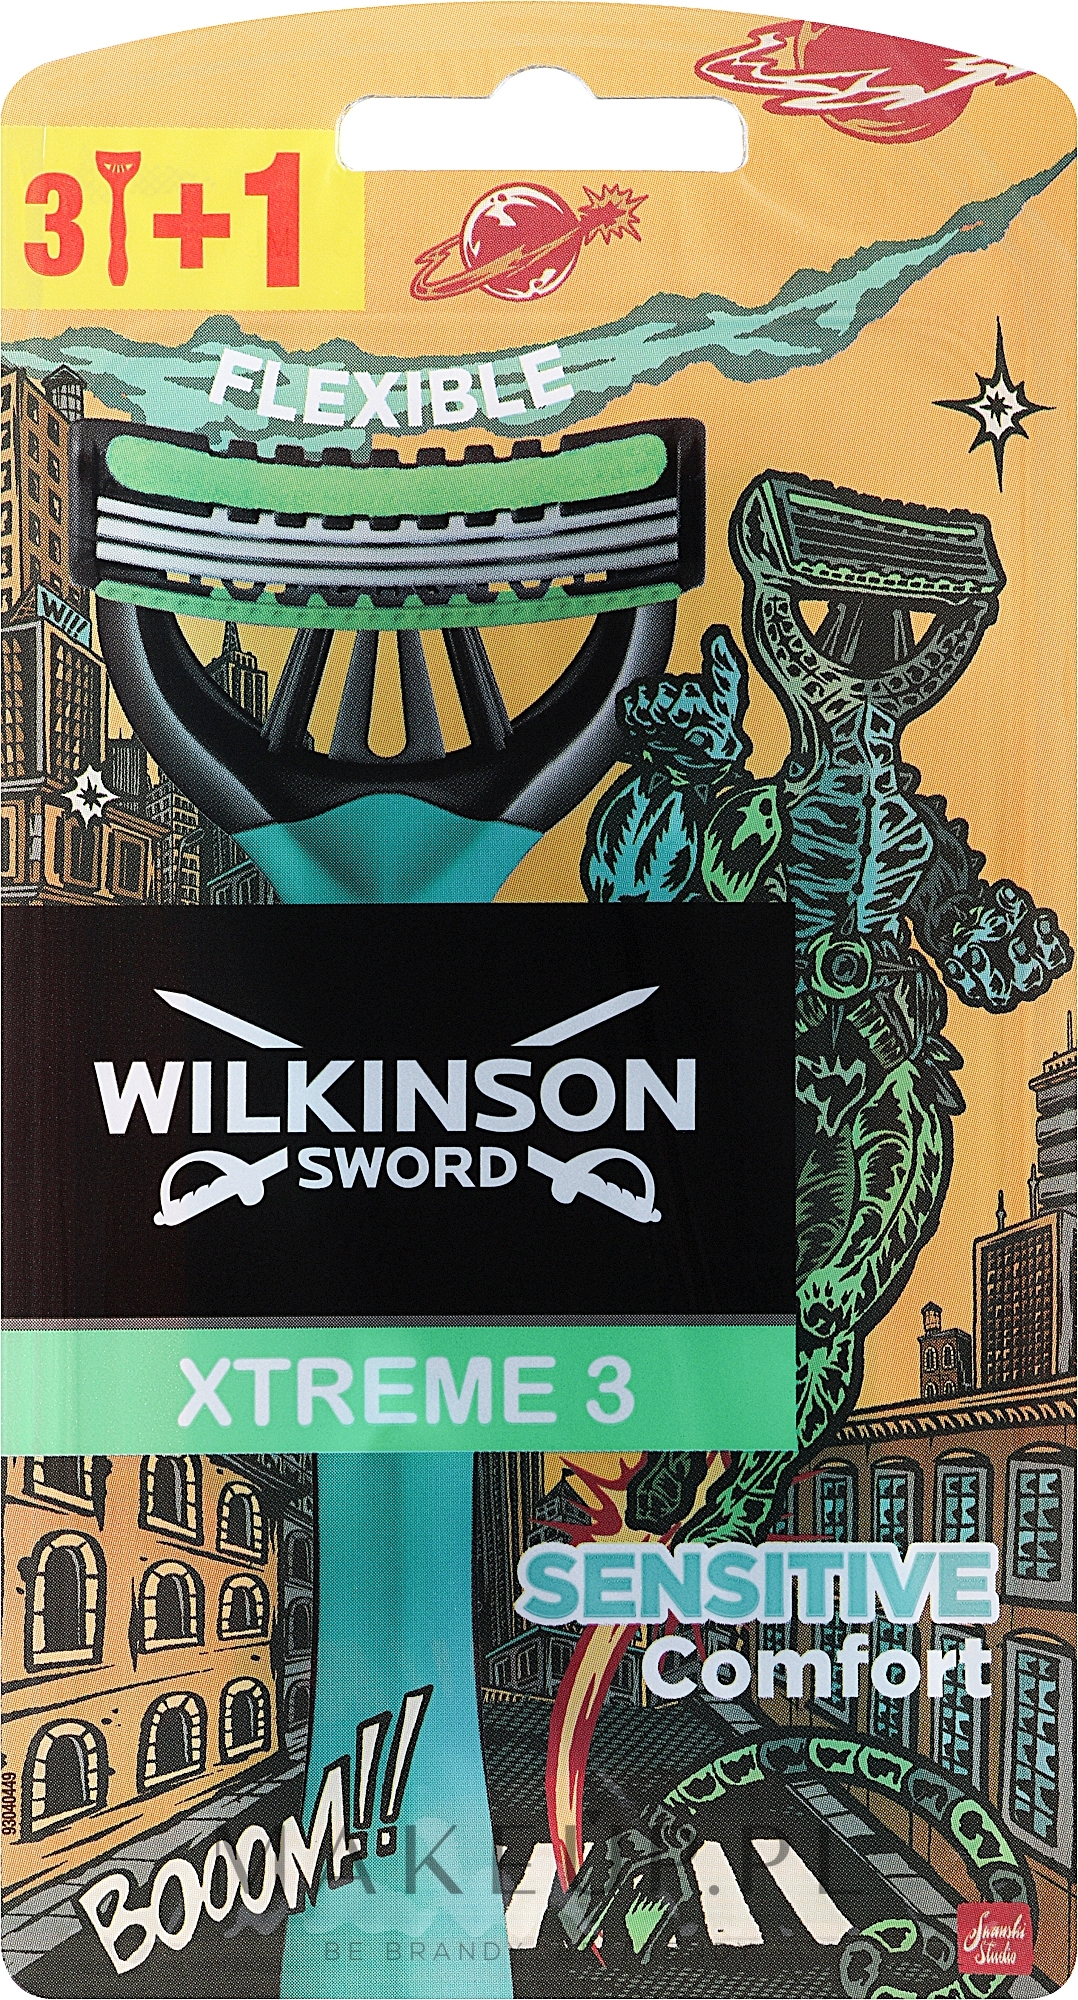 Jednorazowe maszynki do golenia, 4 szt. - Wilkinson Sword Xtreme 3 Sensitive Comfort  — Zdjęcie 4 szt.